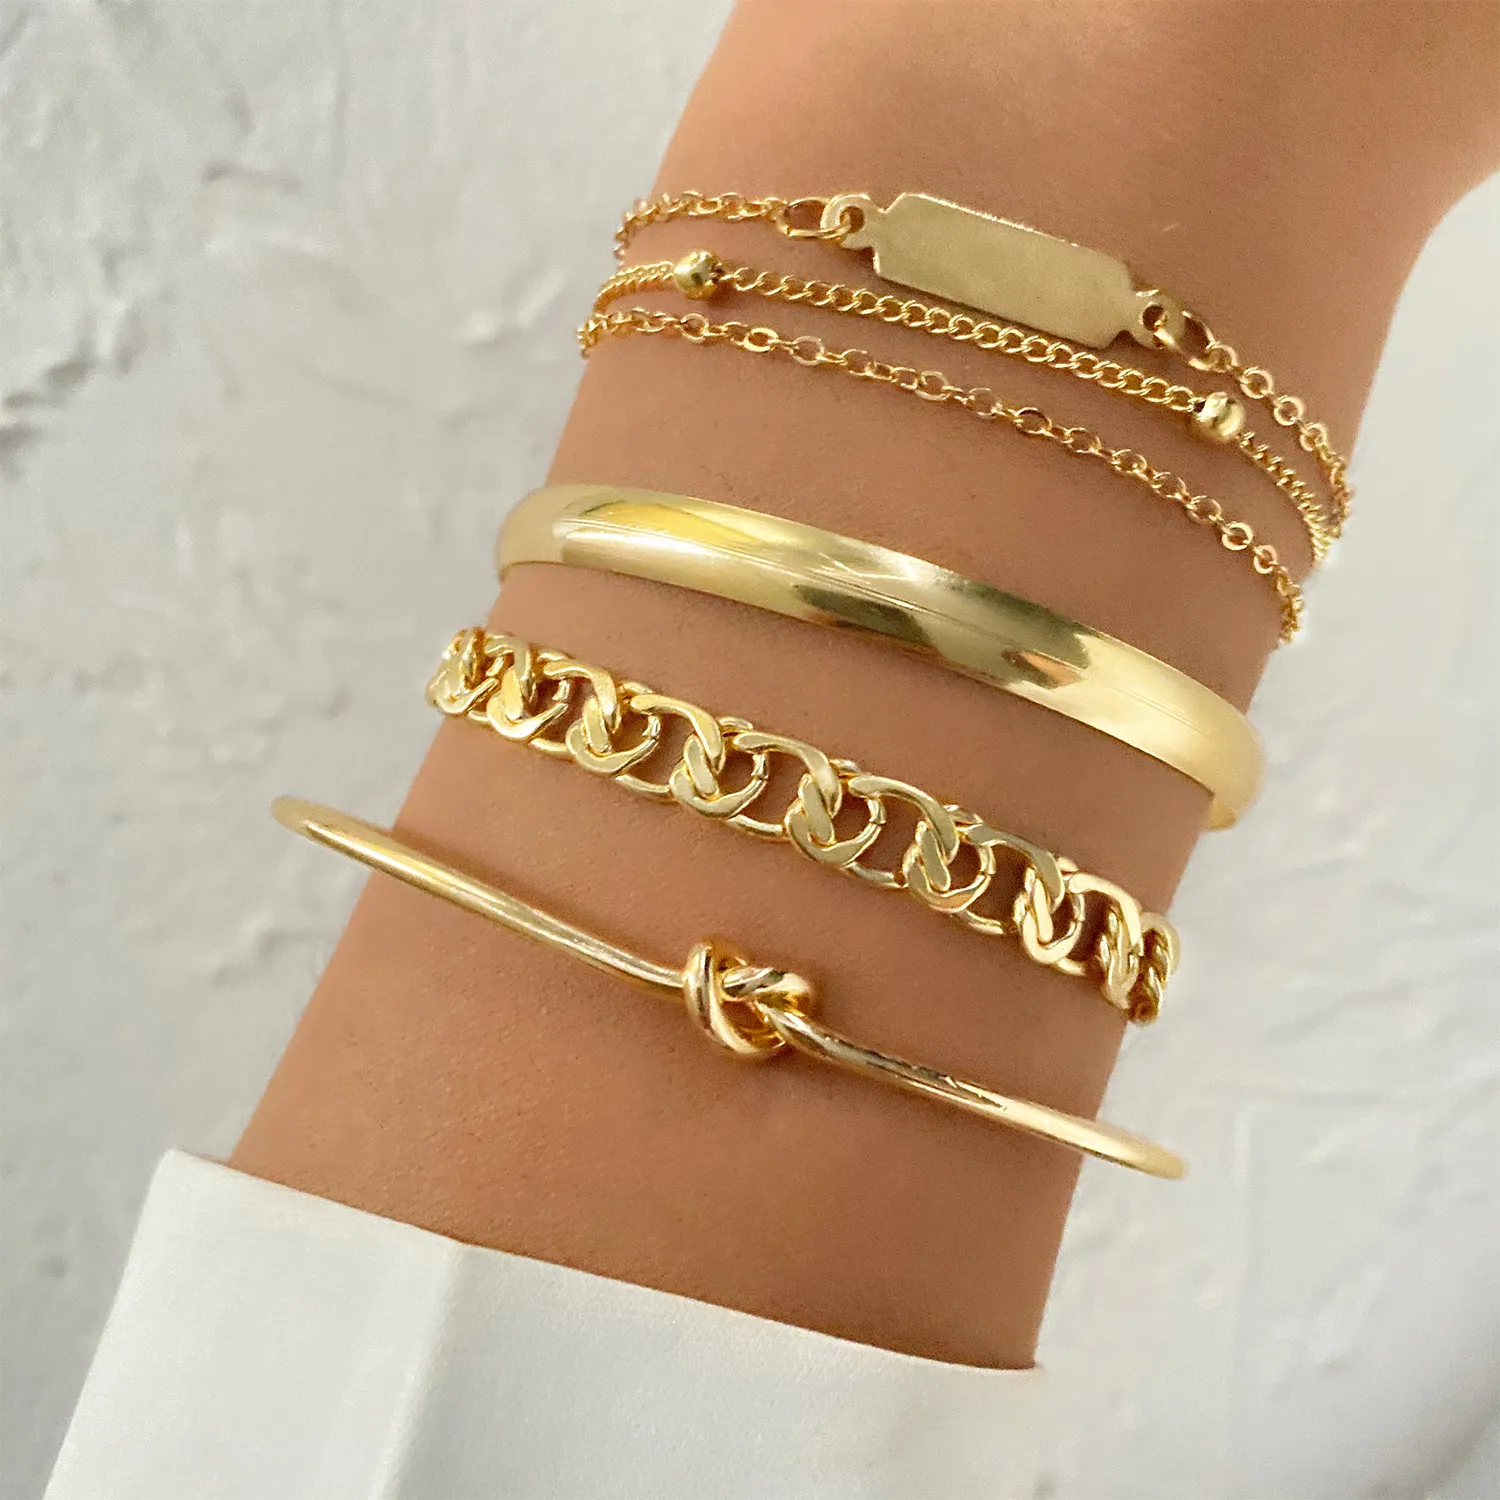 Vkme conjunto pulseira banhada a ouro, conjunto de 4 peças de pulseiras de ouro, polido, dourado, joias para mulheres